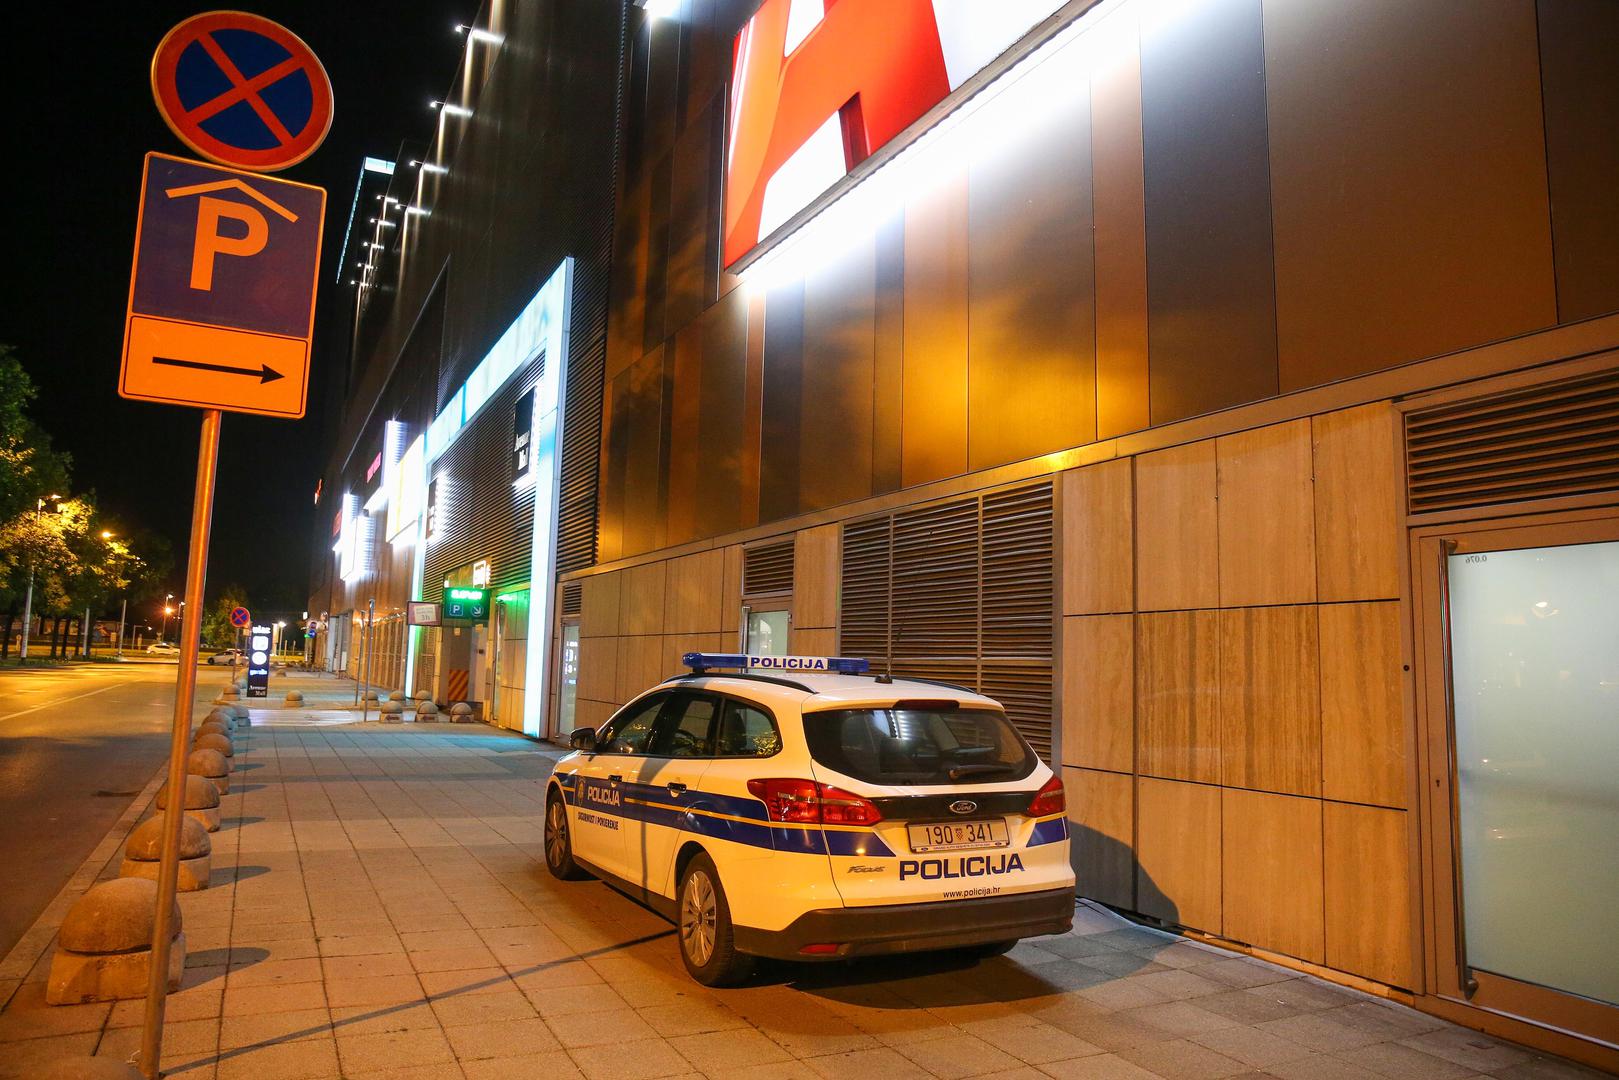 15.06.2022., Zagreb - Pronadjeno tijelo u shoping centru Avenue Mall. Policija trenutno provodi ocevid.  Photo: Matija Habljak/PIXSELL